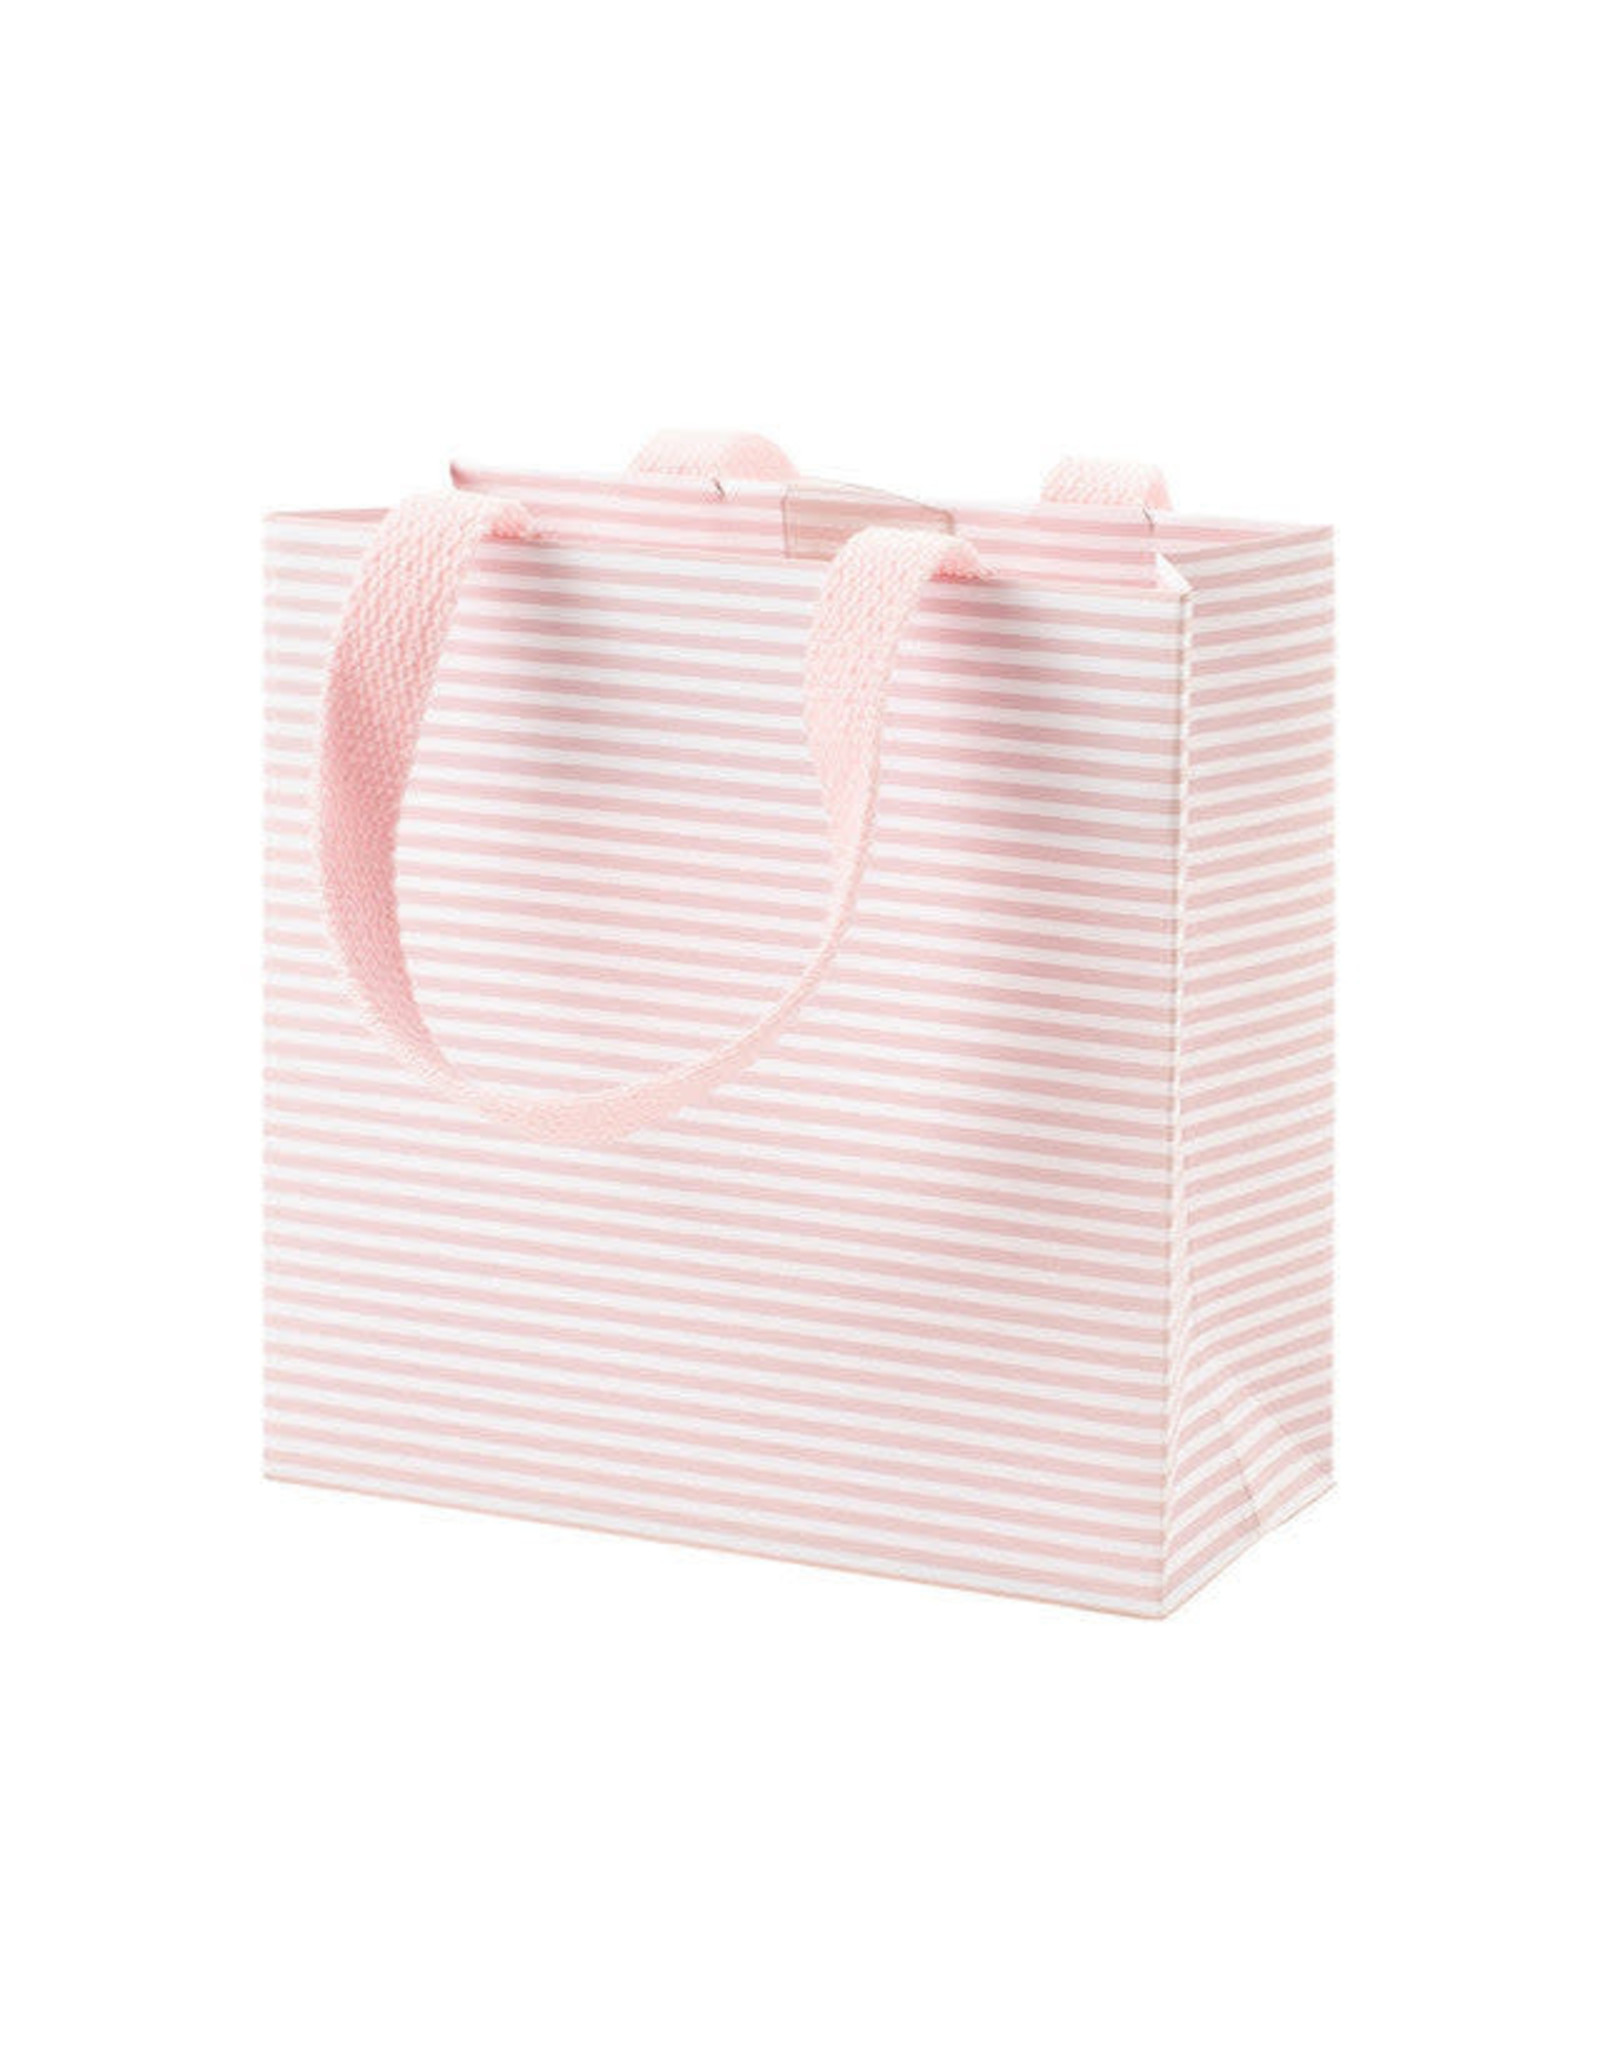 Caspari Gift Bag Mini Stripe Blush SM 5.75x2.5x5.75